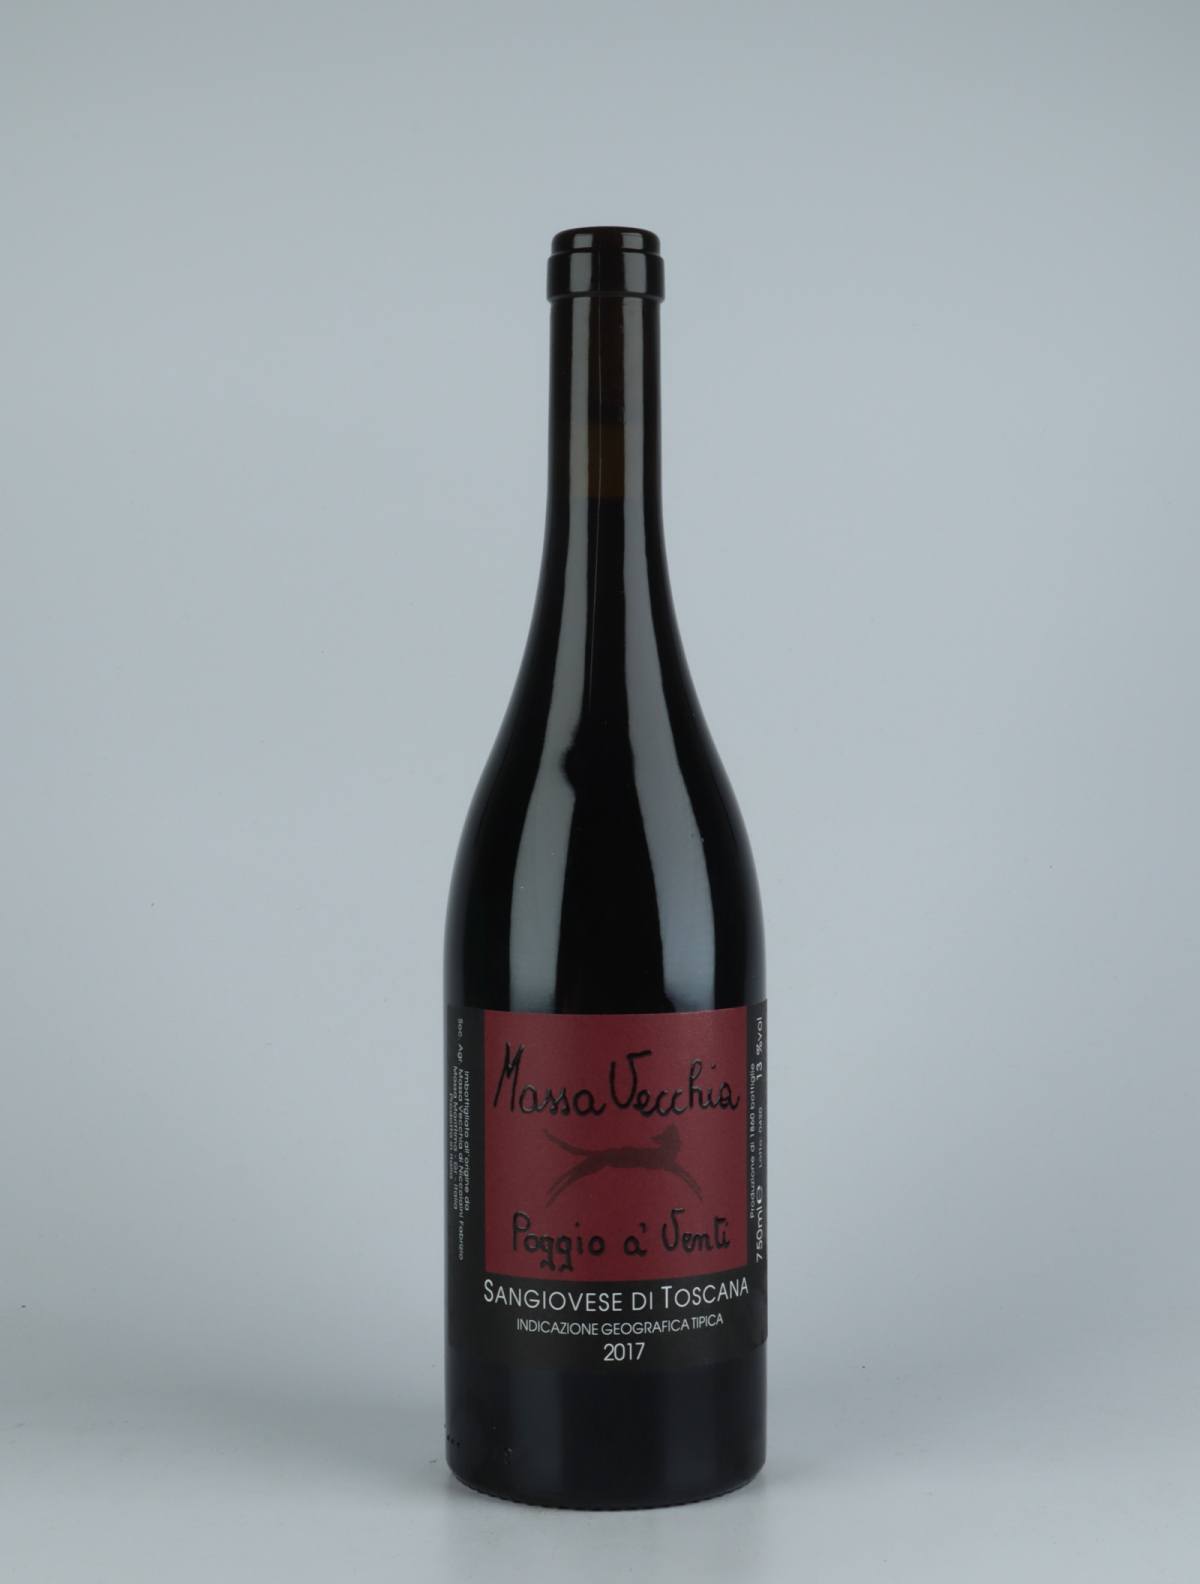 A bottle 2017 Poggio a' Venti Red wine from Massa Vecchia, Tuscany in Italy